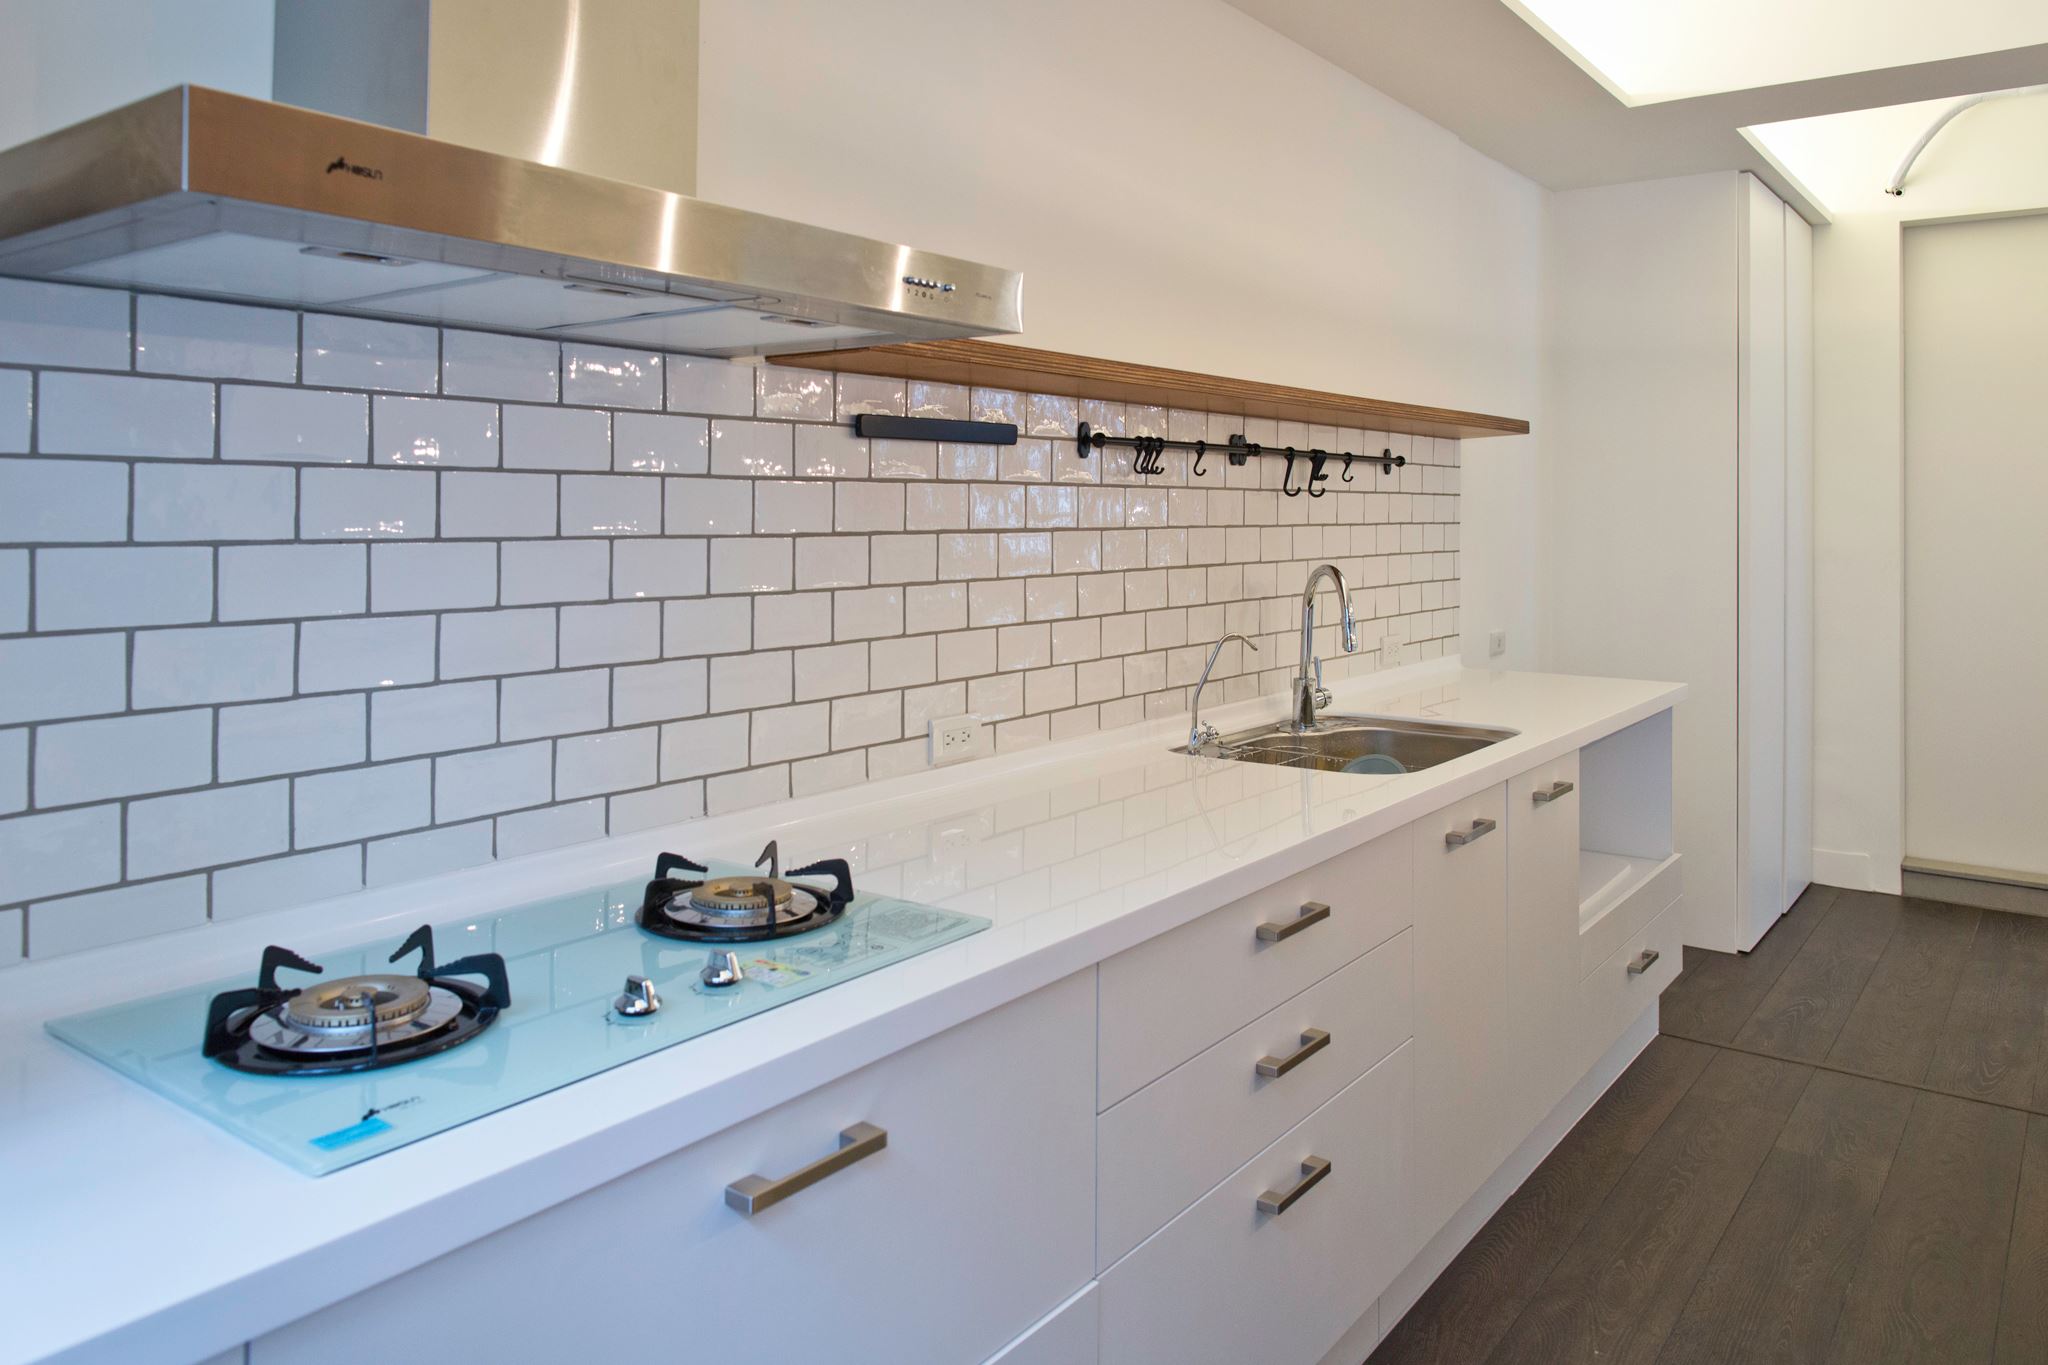 廚房的牆面選擇了類似磚頭的白色瓷磚來鋪設。